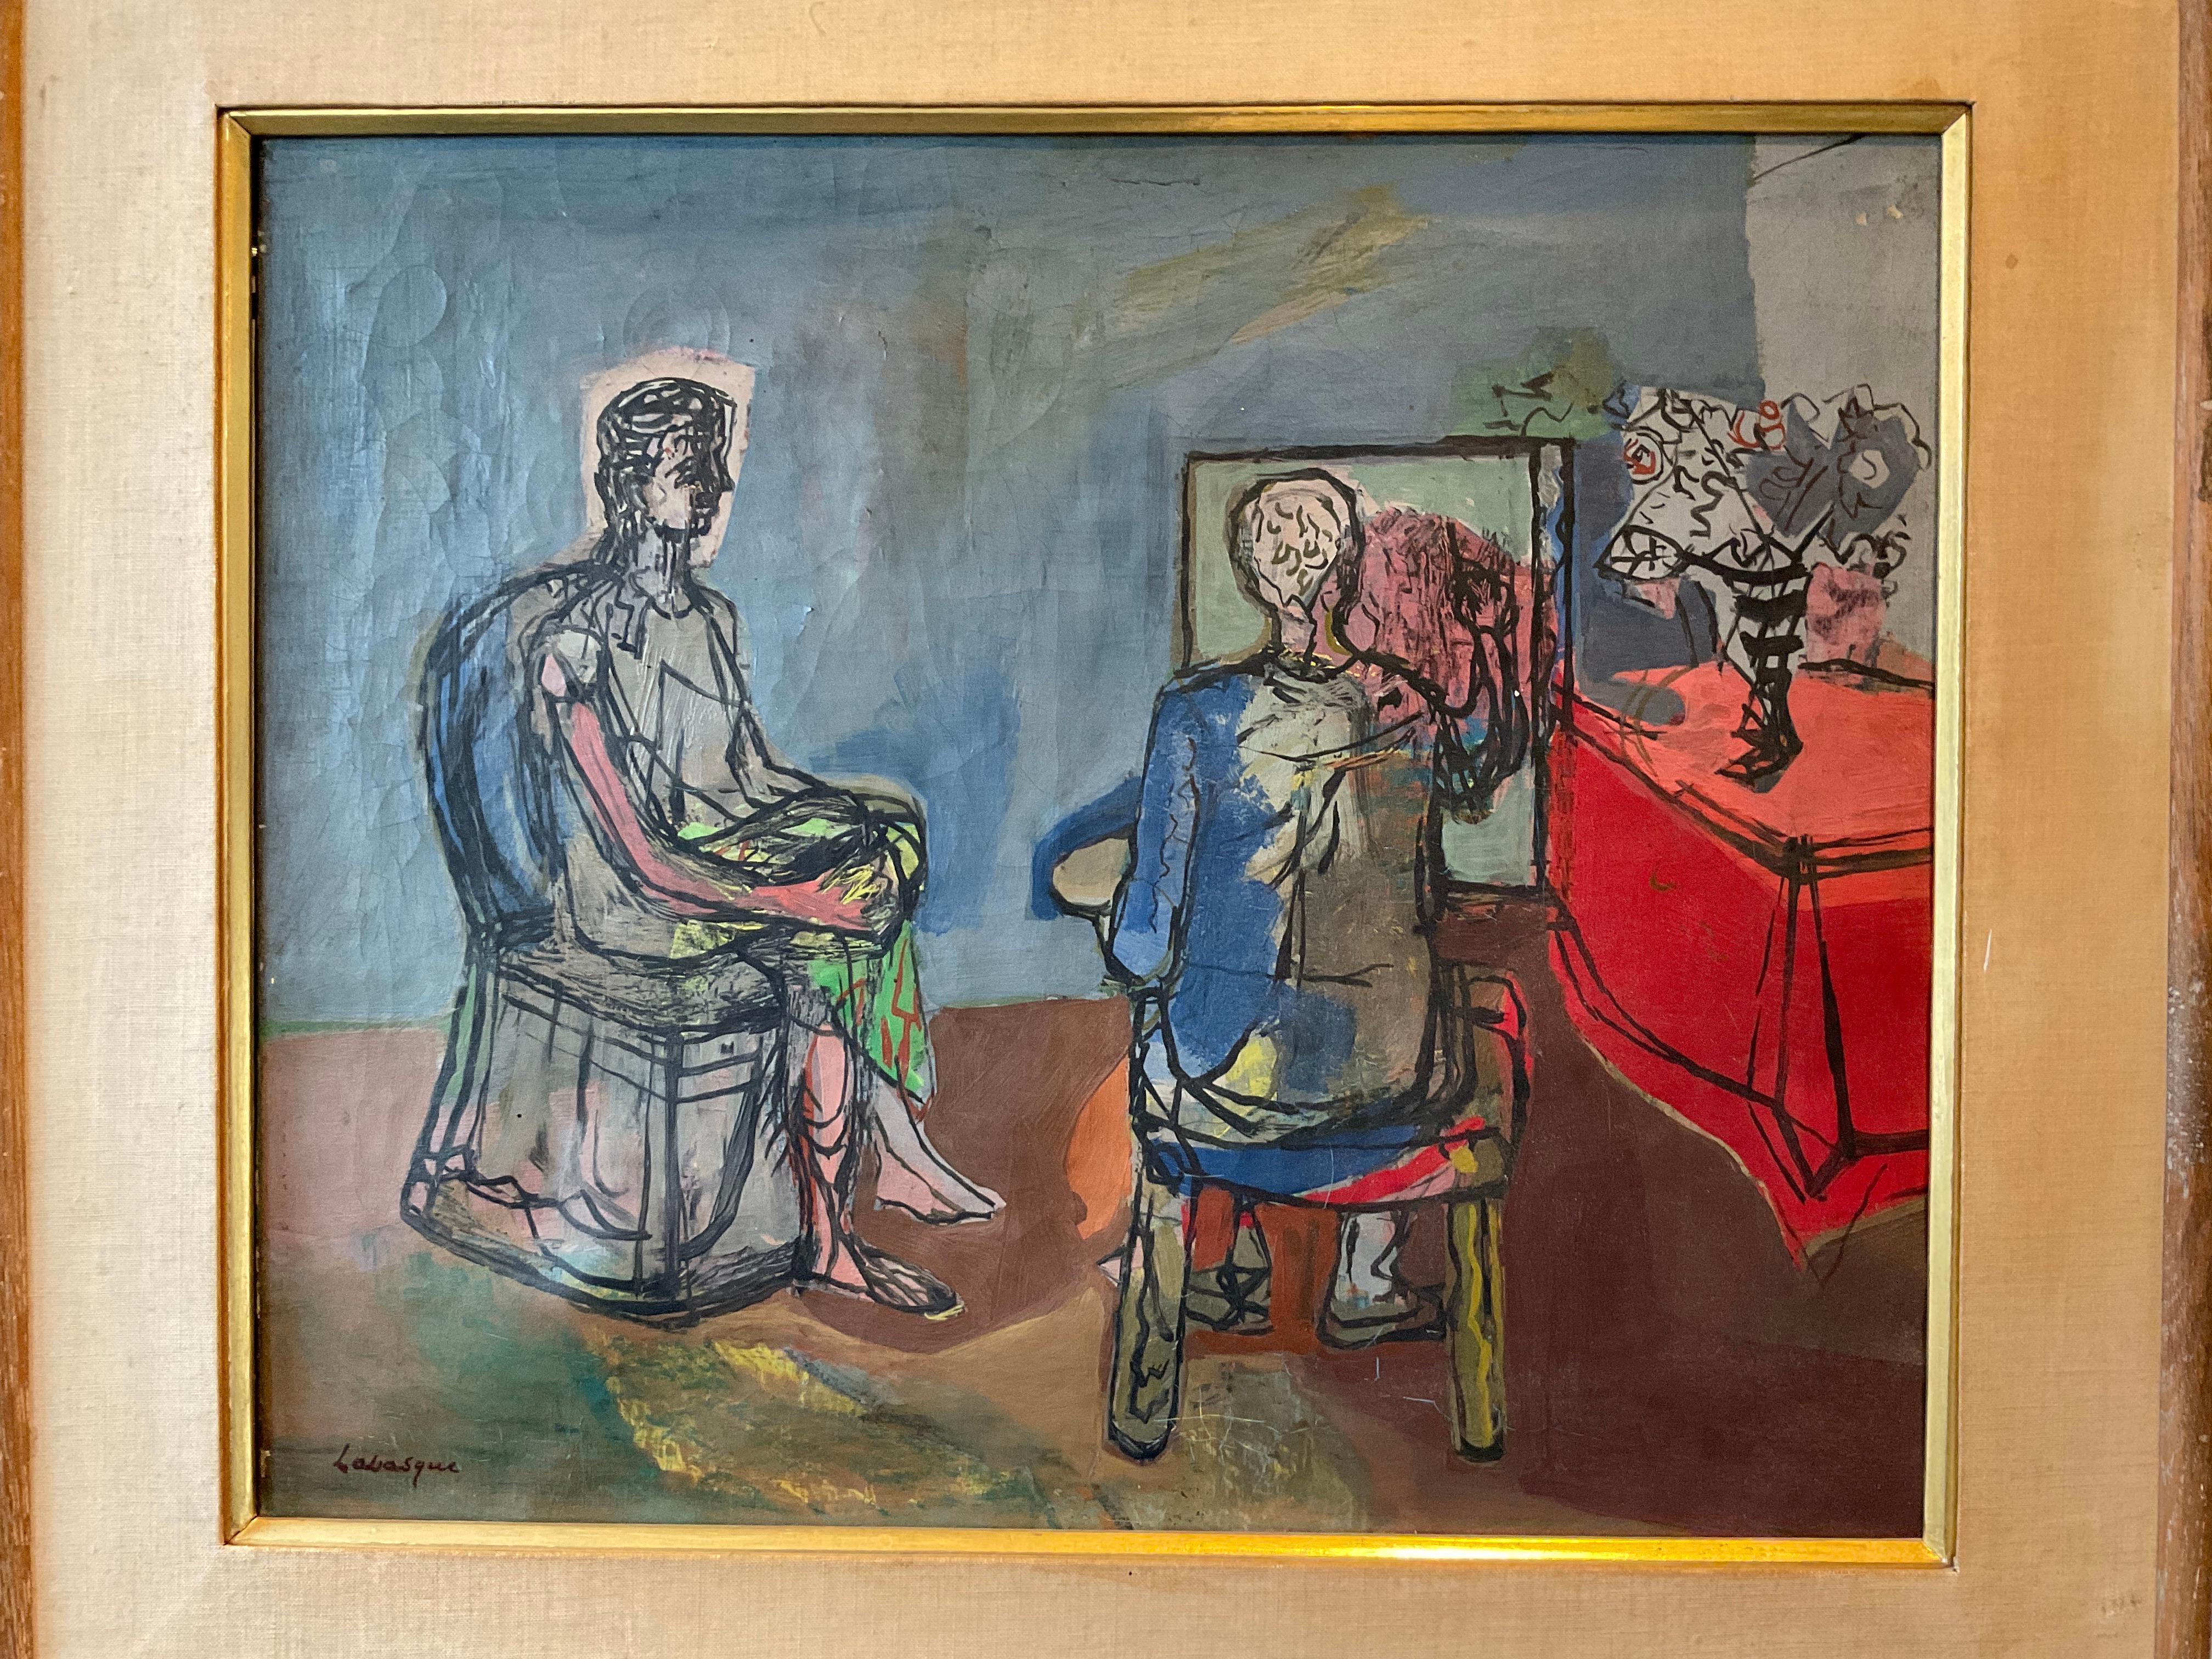 1945 Öl auf Leinwand eines Künstlers, der sein Thema malt. Gemalt von Labasque. 2 alte Labels aus einer Pariser und einer New Yorker Galerie. Einige Lackschäden wie auf dem Foto zu sehen. Matt befleckt.